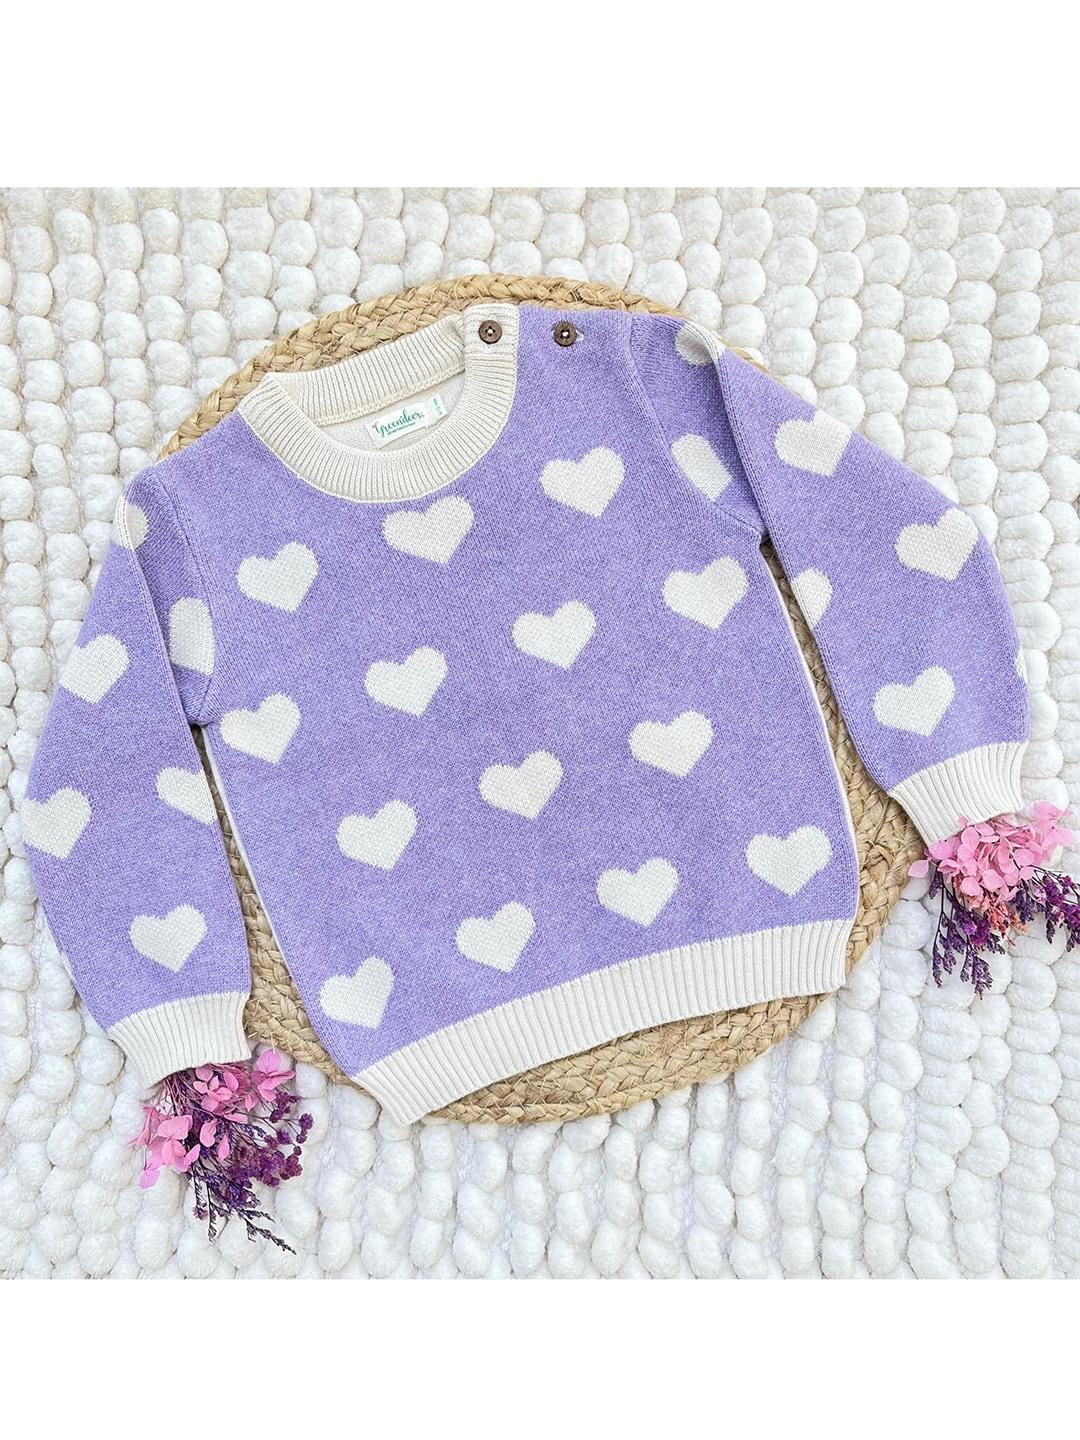 greendeer unisex kids lavender & white pullover